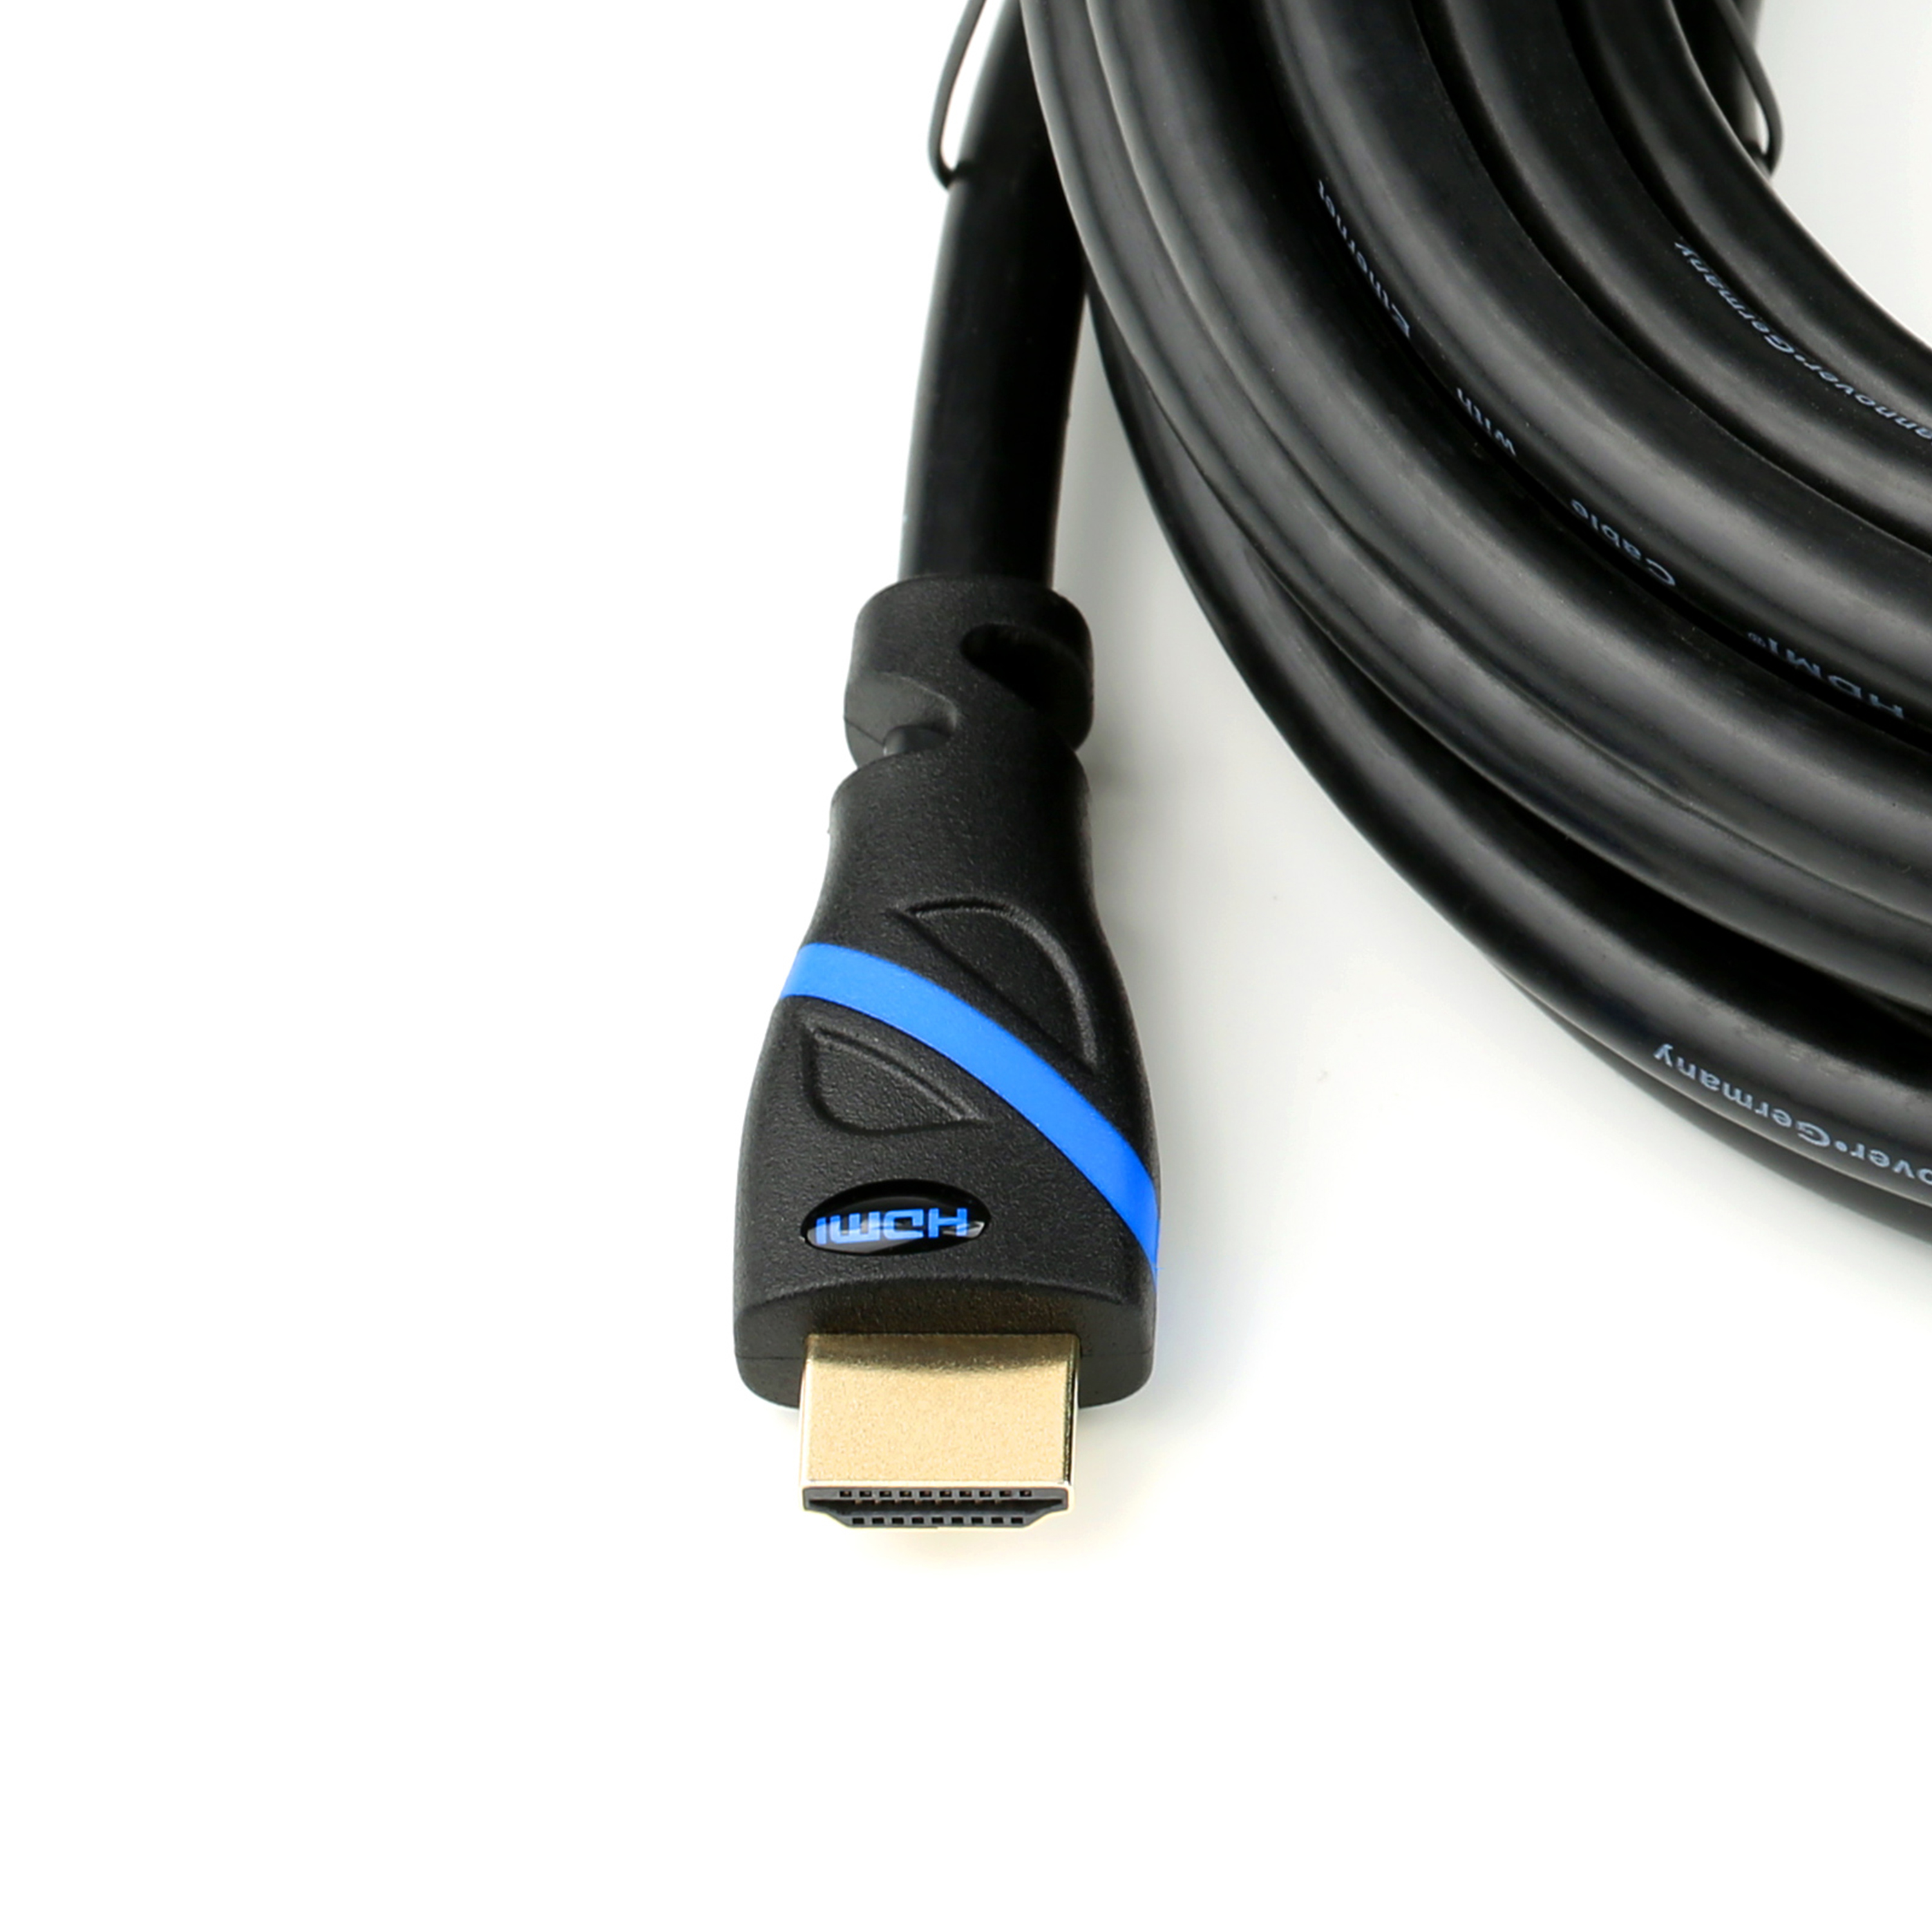 CSL HDMI Kabel, HDMI schwarz/blau Kabel, 5m 2.0